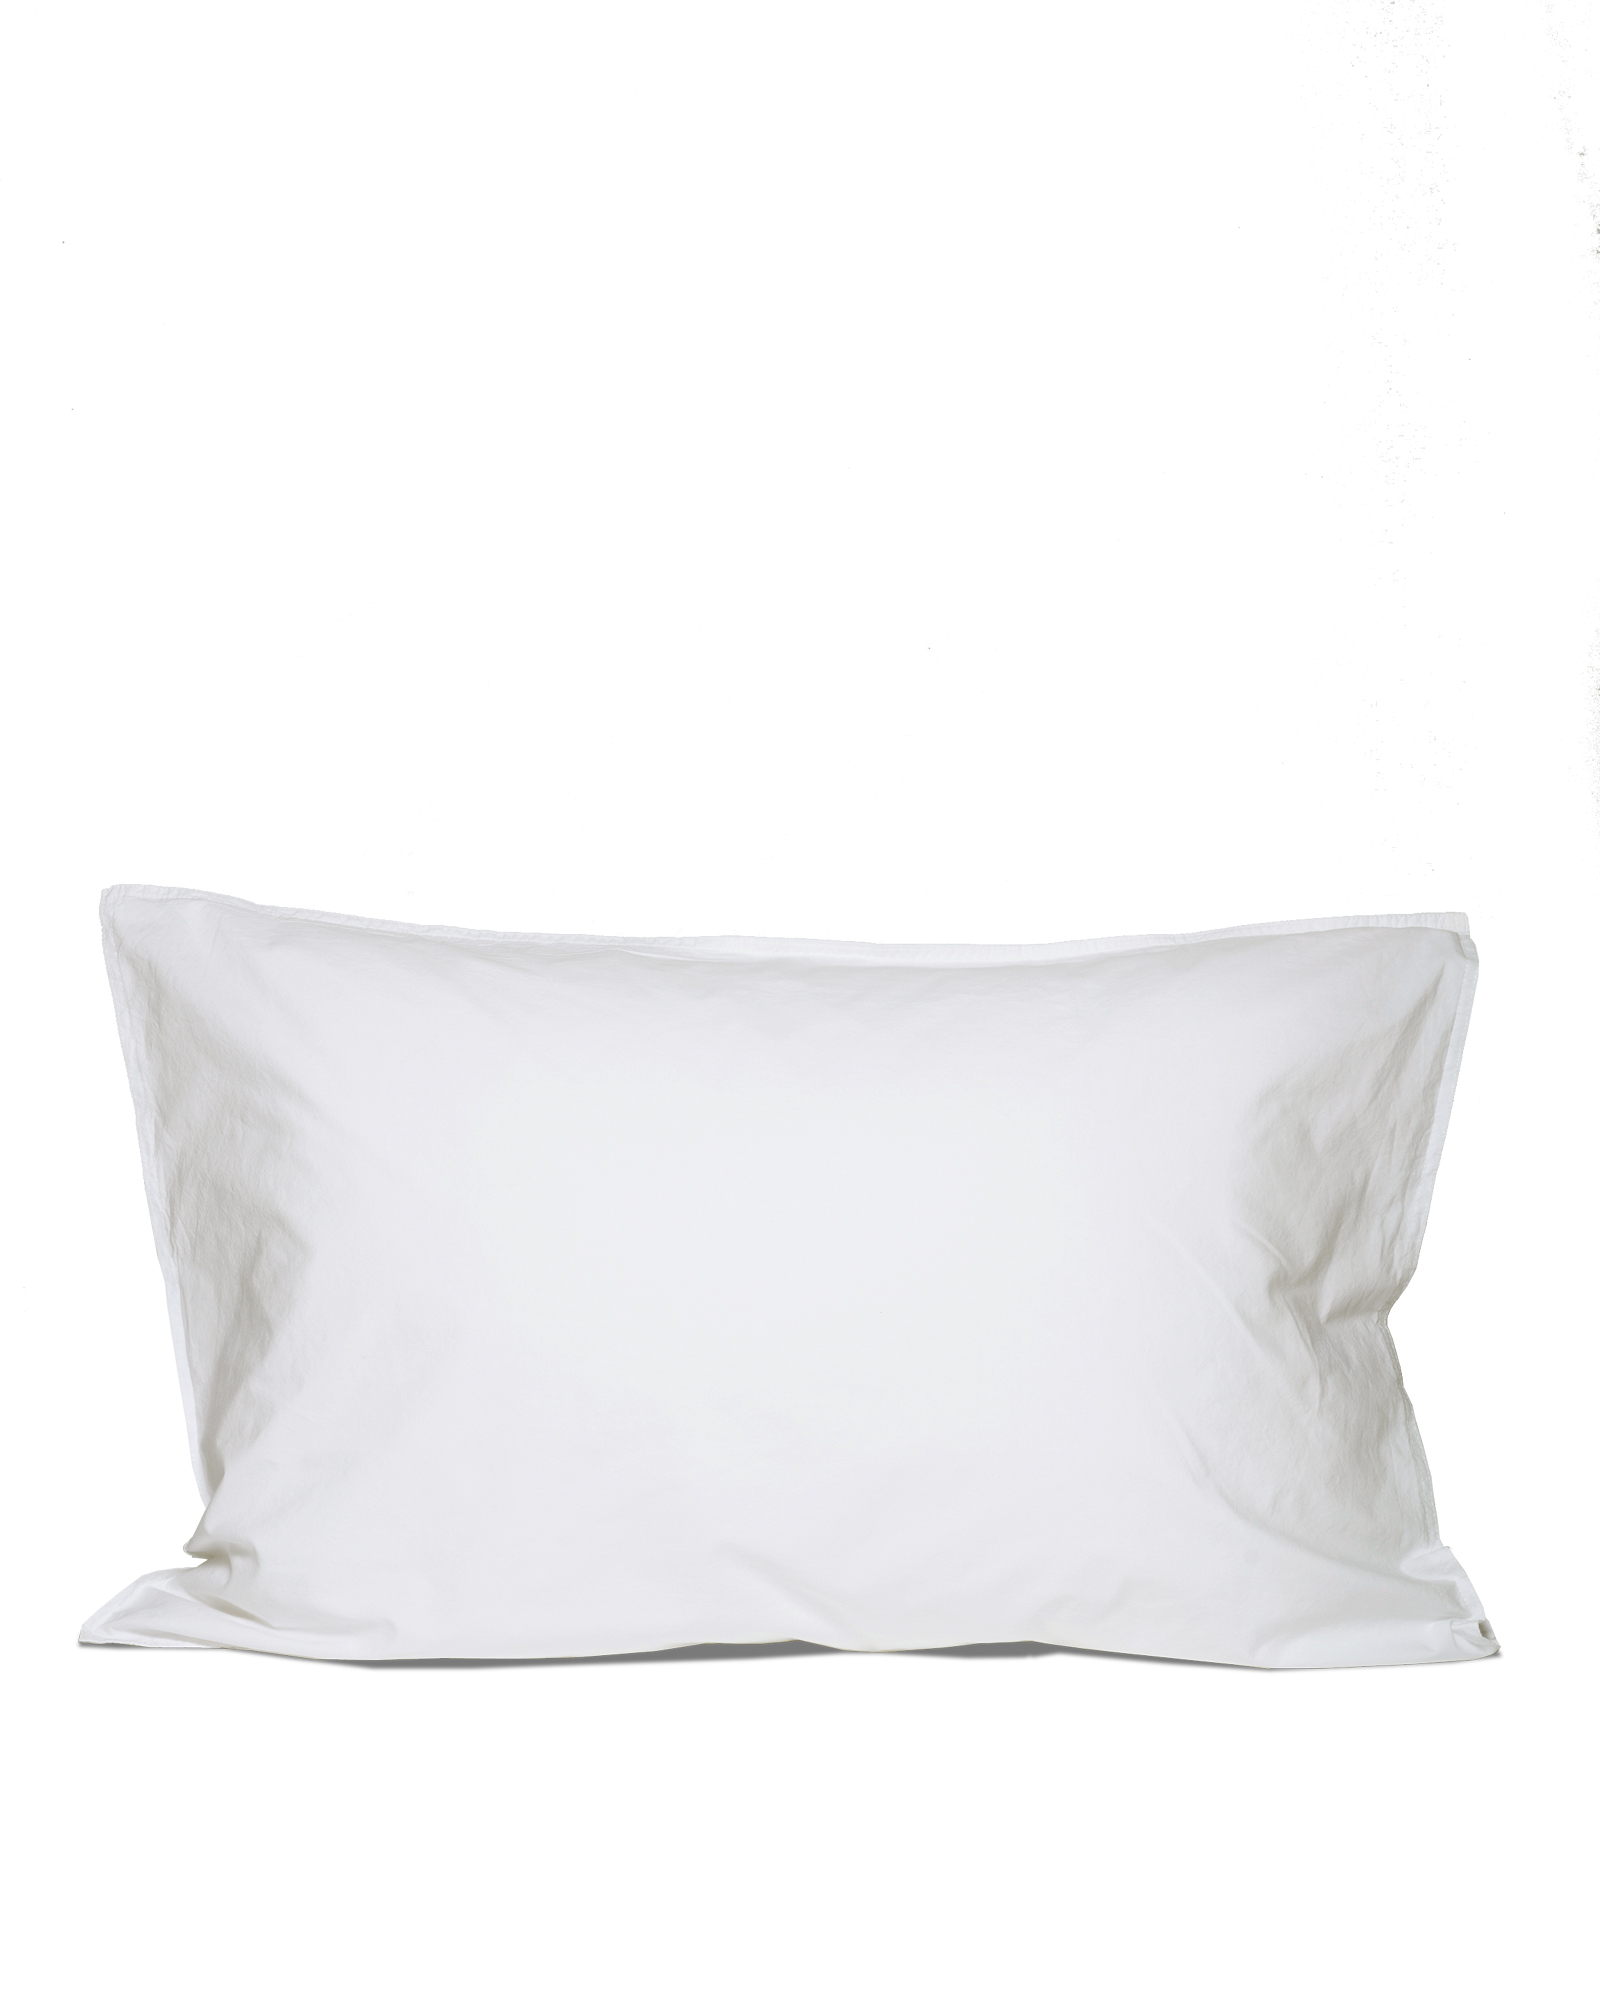 MARIE-MARIE - Pillowcase VINTAGE COTTON White Snow - 50x75 cm - White Snow